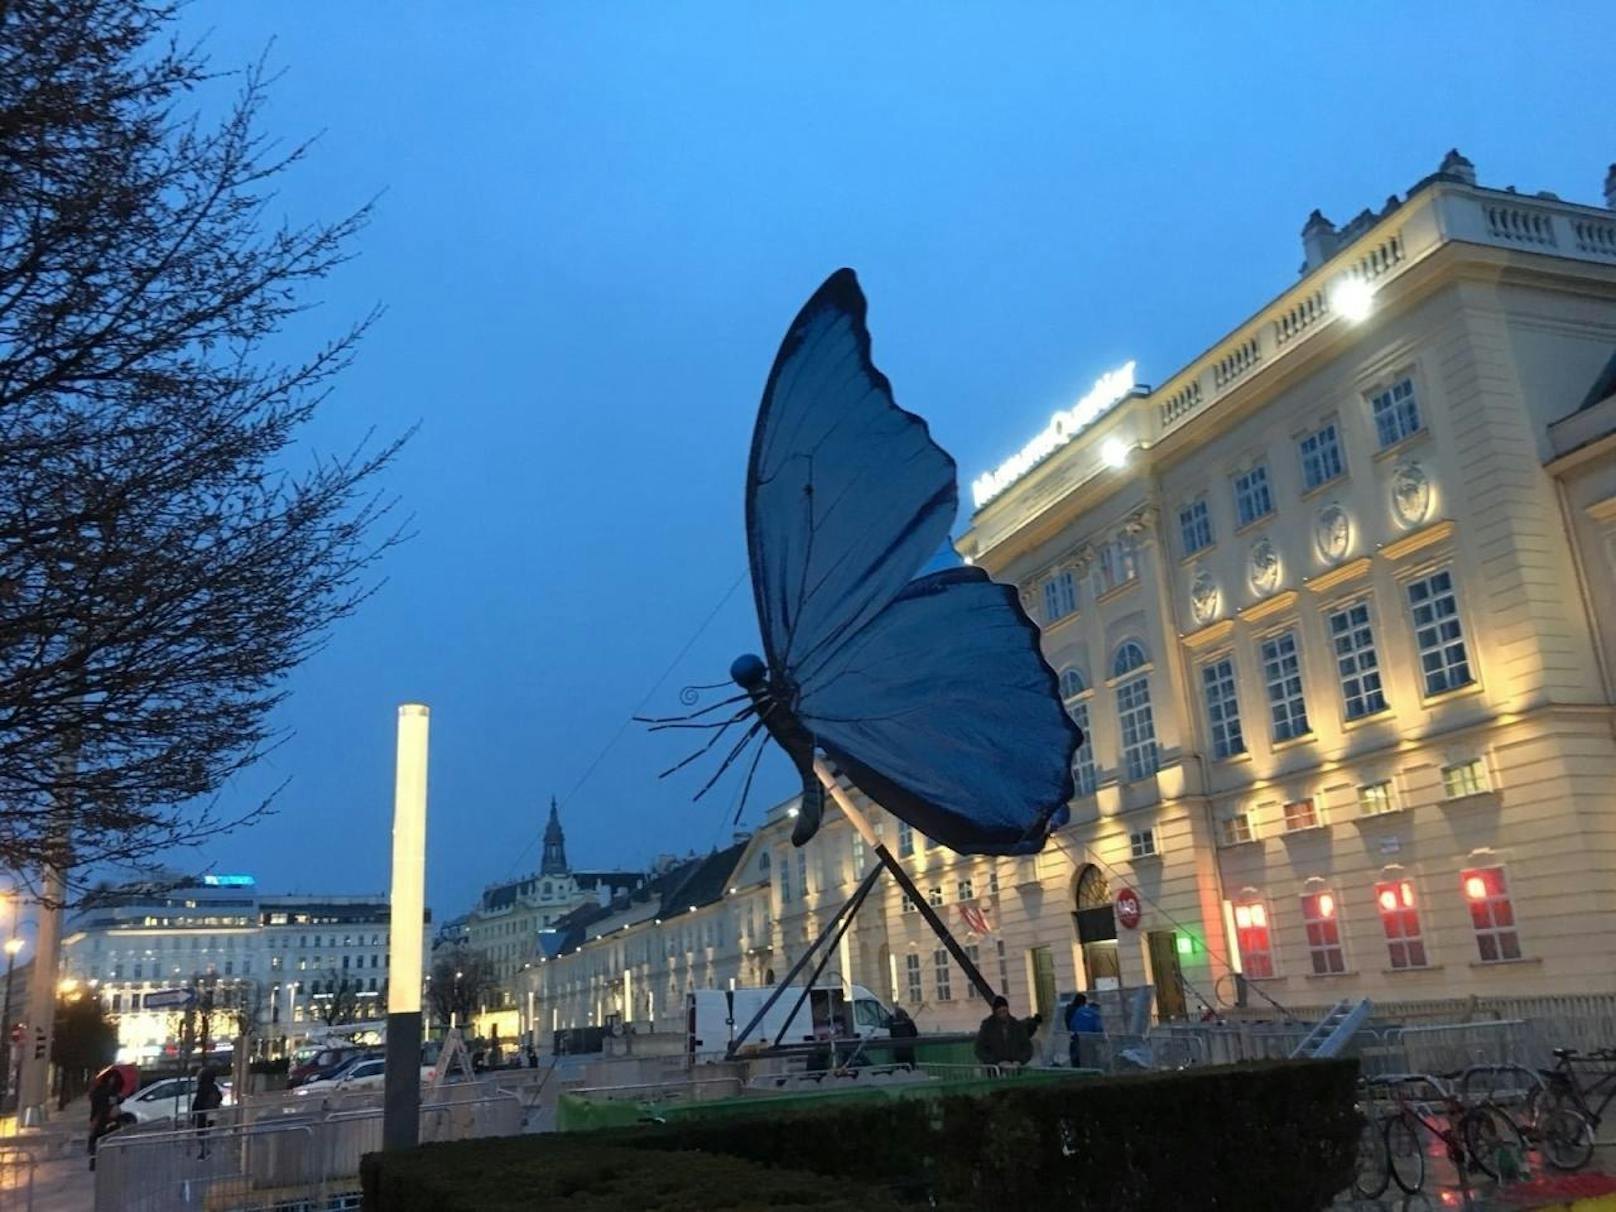 <b>05. April 2018:</b> Schmetterlinge in Wien sorgten die jüngste Tage für Rätselraten. Nun ist das Geheimnis gelüftet. Die farbenprächtige Installation mit einer Höhe von 13,5 Meter vor dem Museumsquartier sowie Dutzende Schmetterlingsplakate in Wien sind Teil der neuen Huawei P20-Serie. Zusätzlich können alle Teilnehmer auch durch das Fotografieren des großen Schmetterlings vor dem Museumsquartier am Gewinnspiel teilnehmen. Als Preis unter allen auf der Huawei Facebook-Wall eingegangenen Bilder winkt eines von fünf P20-Series-Smartphones. "Inspiriert von der Farbenpracht und der Farbintensität von Schmetterlingen, widmet Huawei die aktuelle Kampagne der neuen Huawei P20-Serie den farbenfrohen Falter", so die Kampagne.  <a href="https://www.facebook.com/HuaweimobileAT">Hier geht's zur Facebook-Seite.</a>